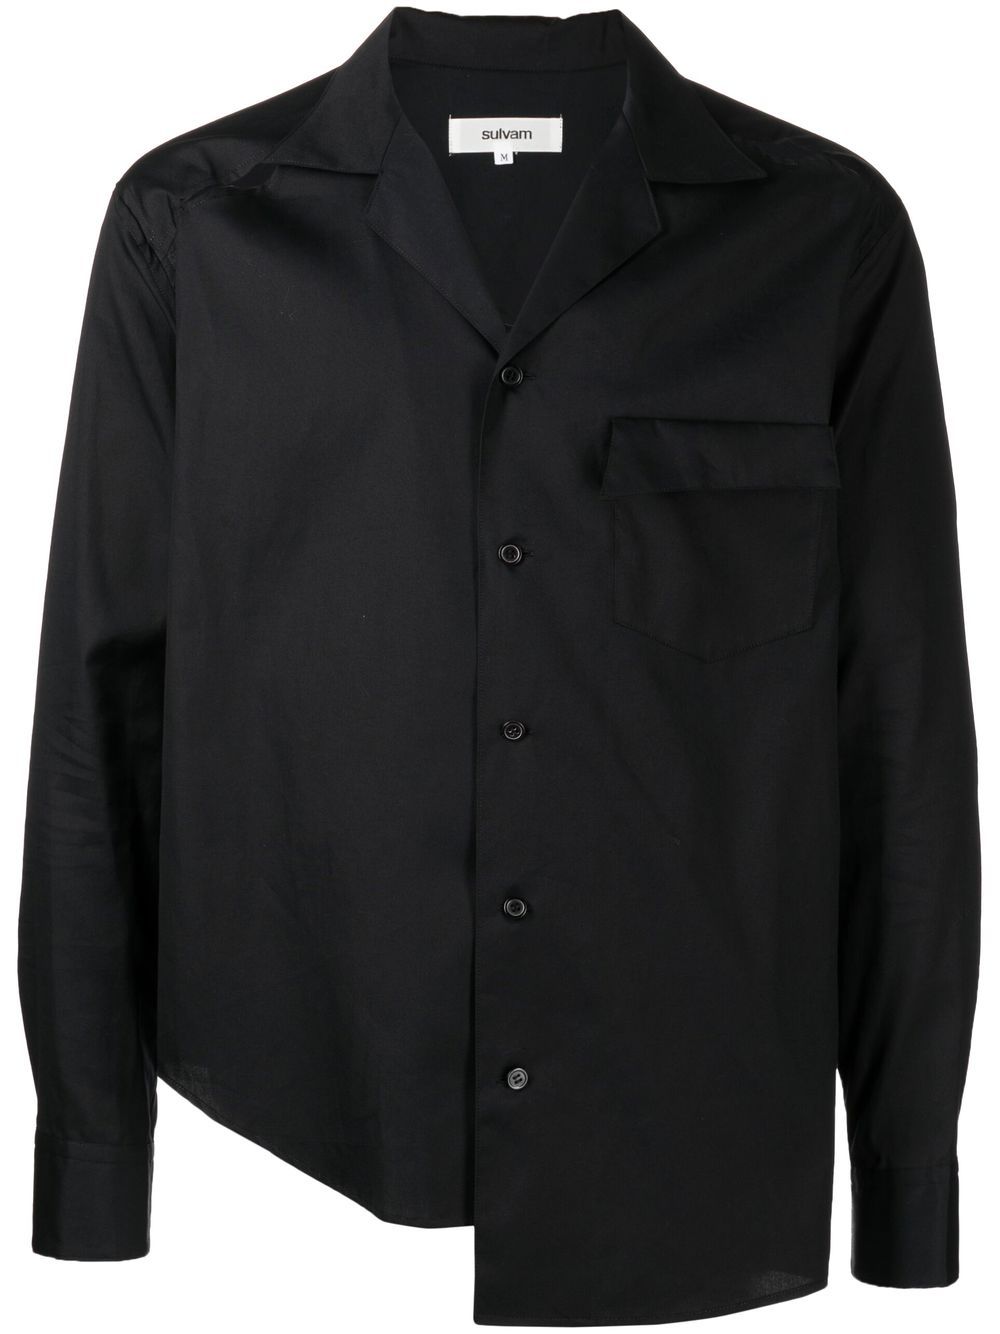 sulvam cut-out asymmetric shirt - Black von sulvam